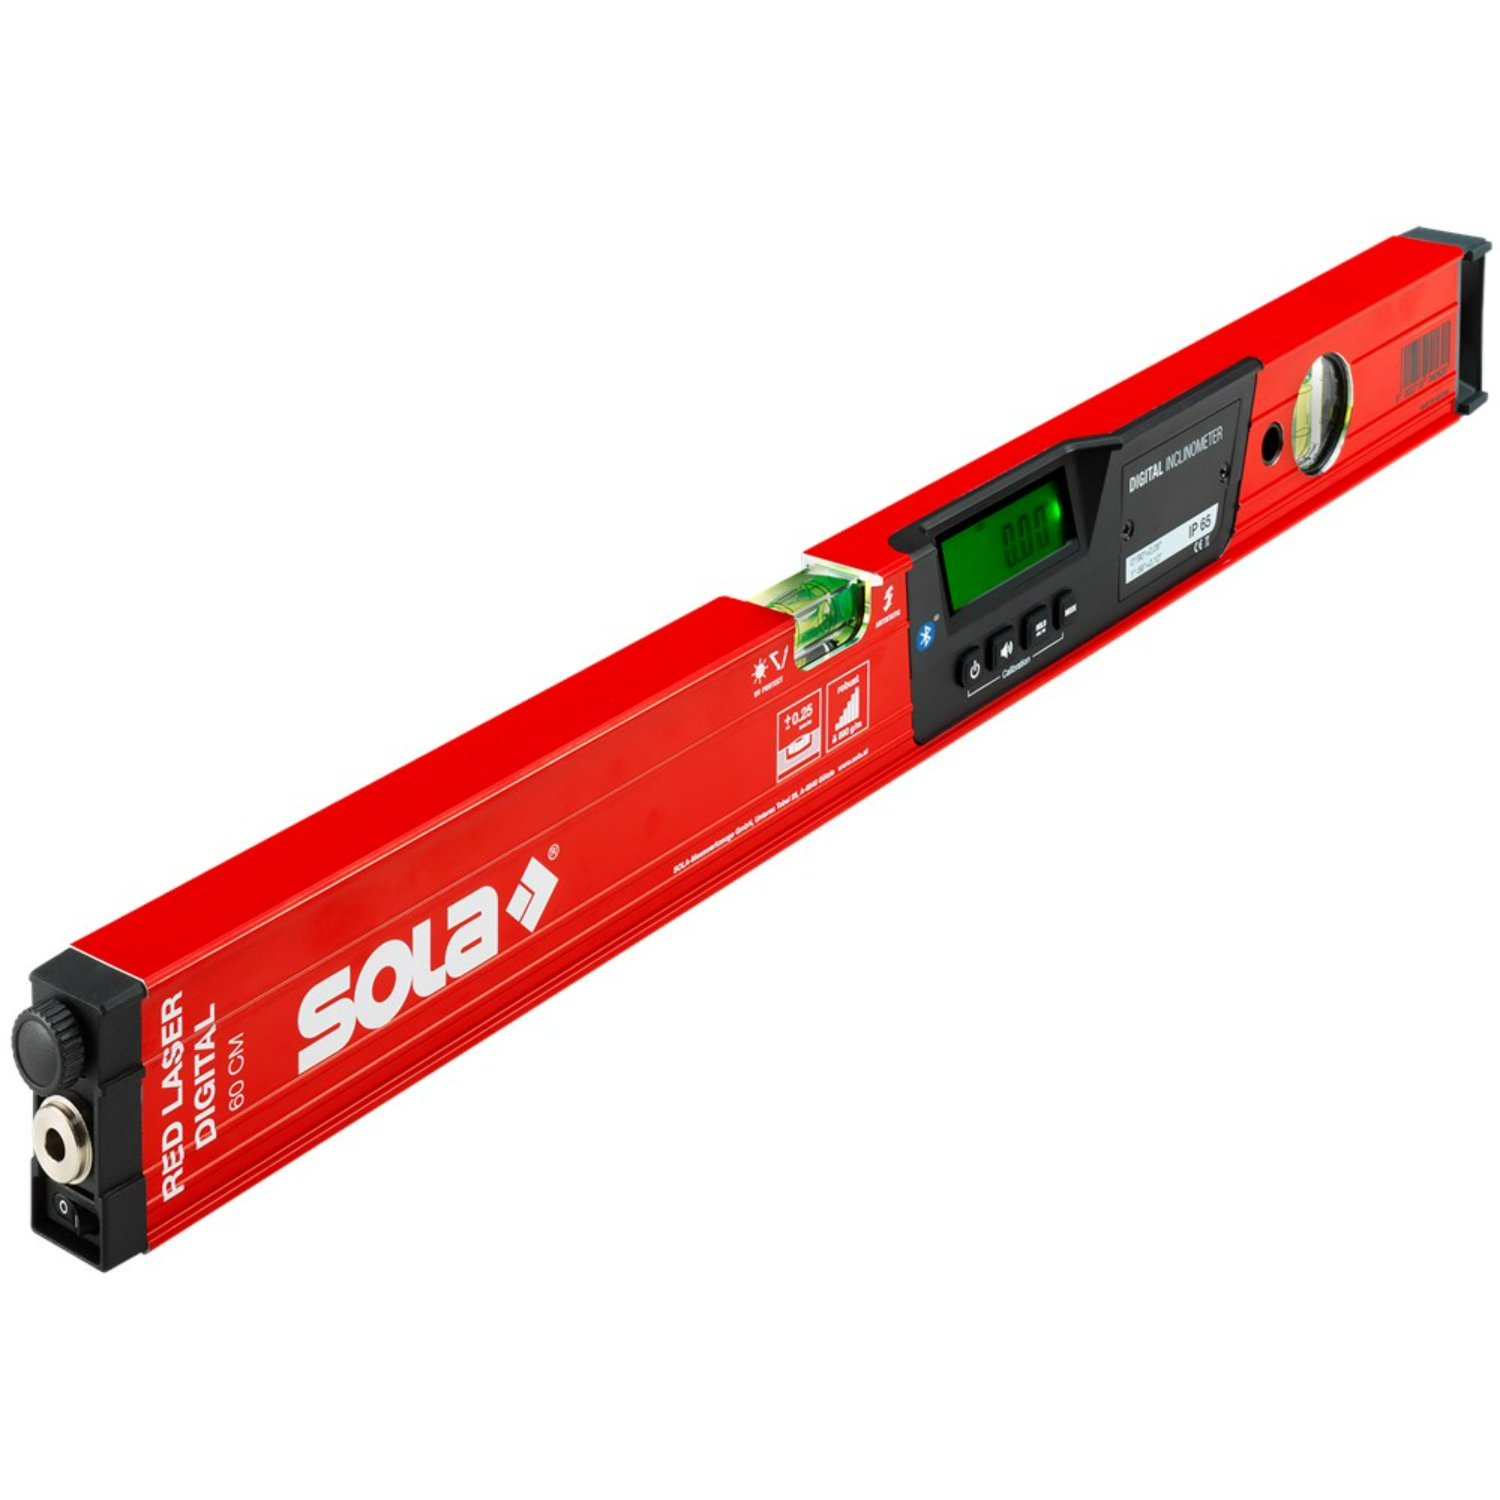 Sola RED 60 niveau laser numérique digital Bluetooth - 600 mm